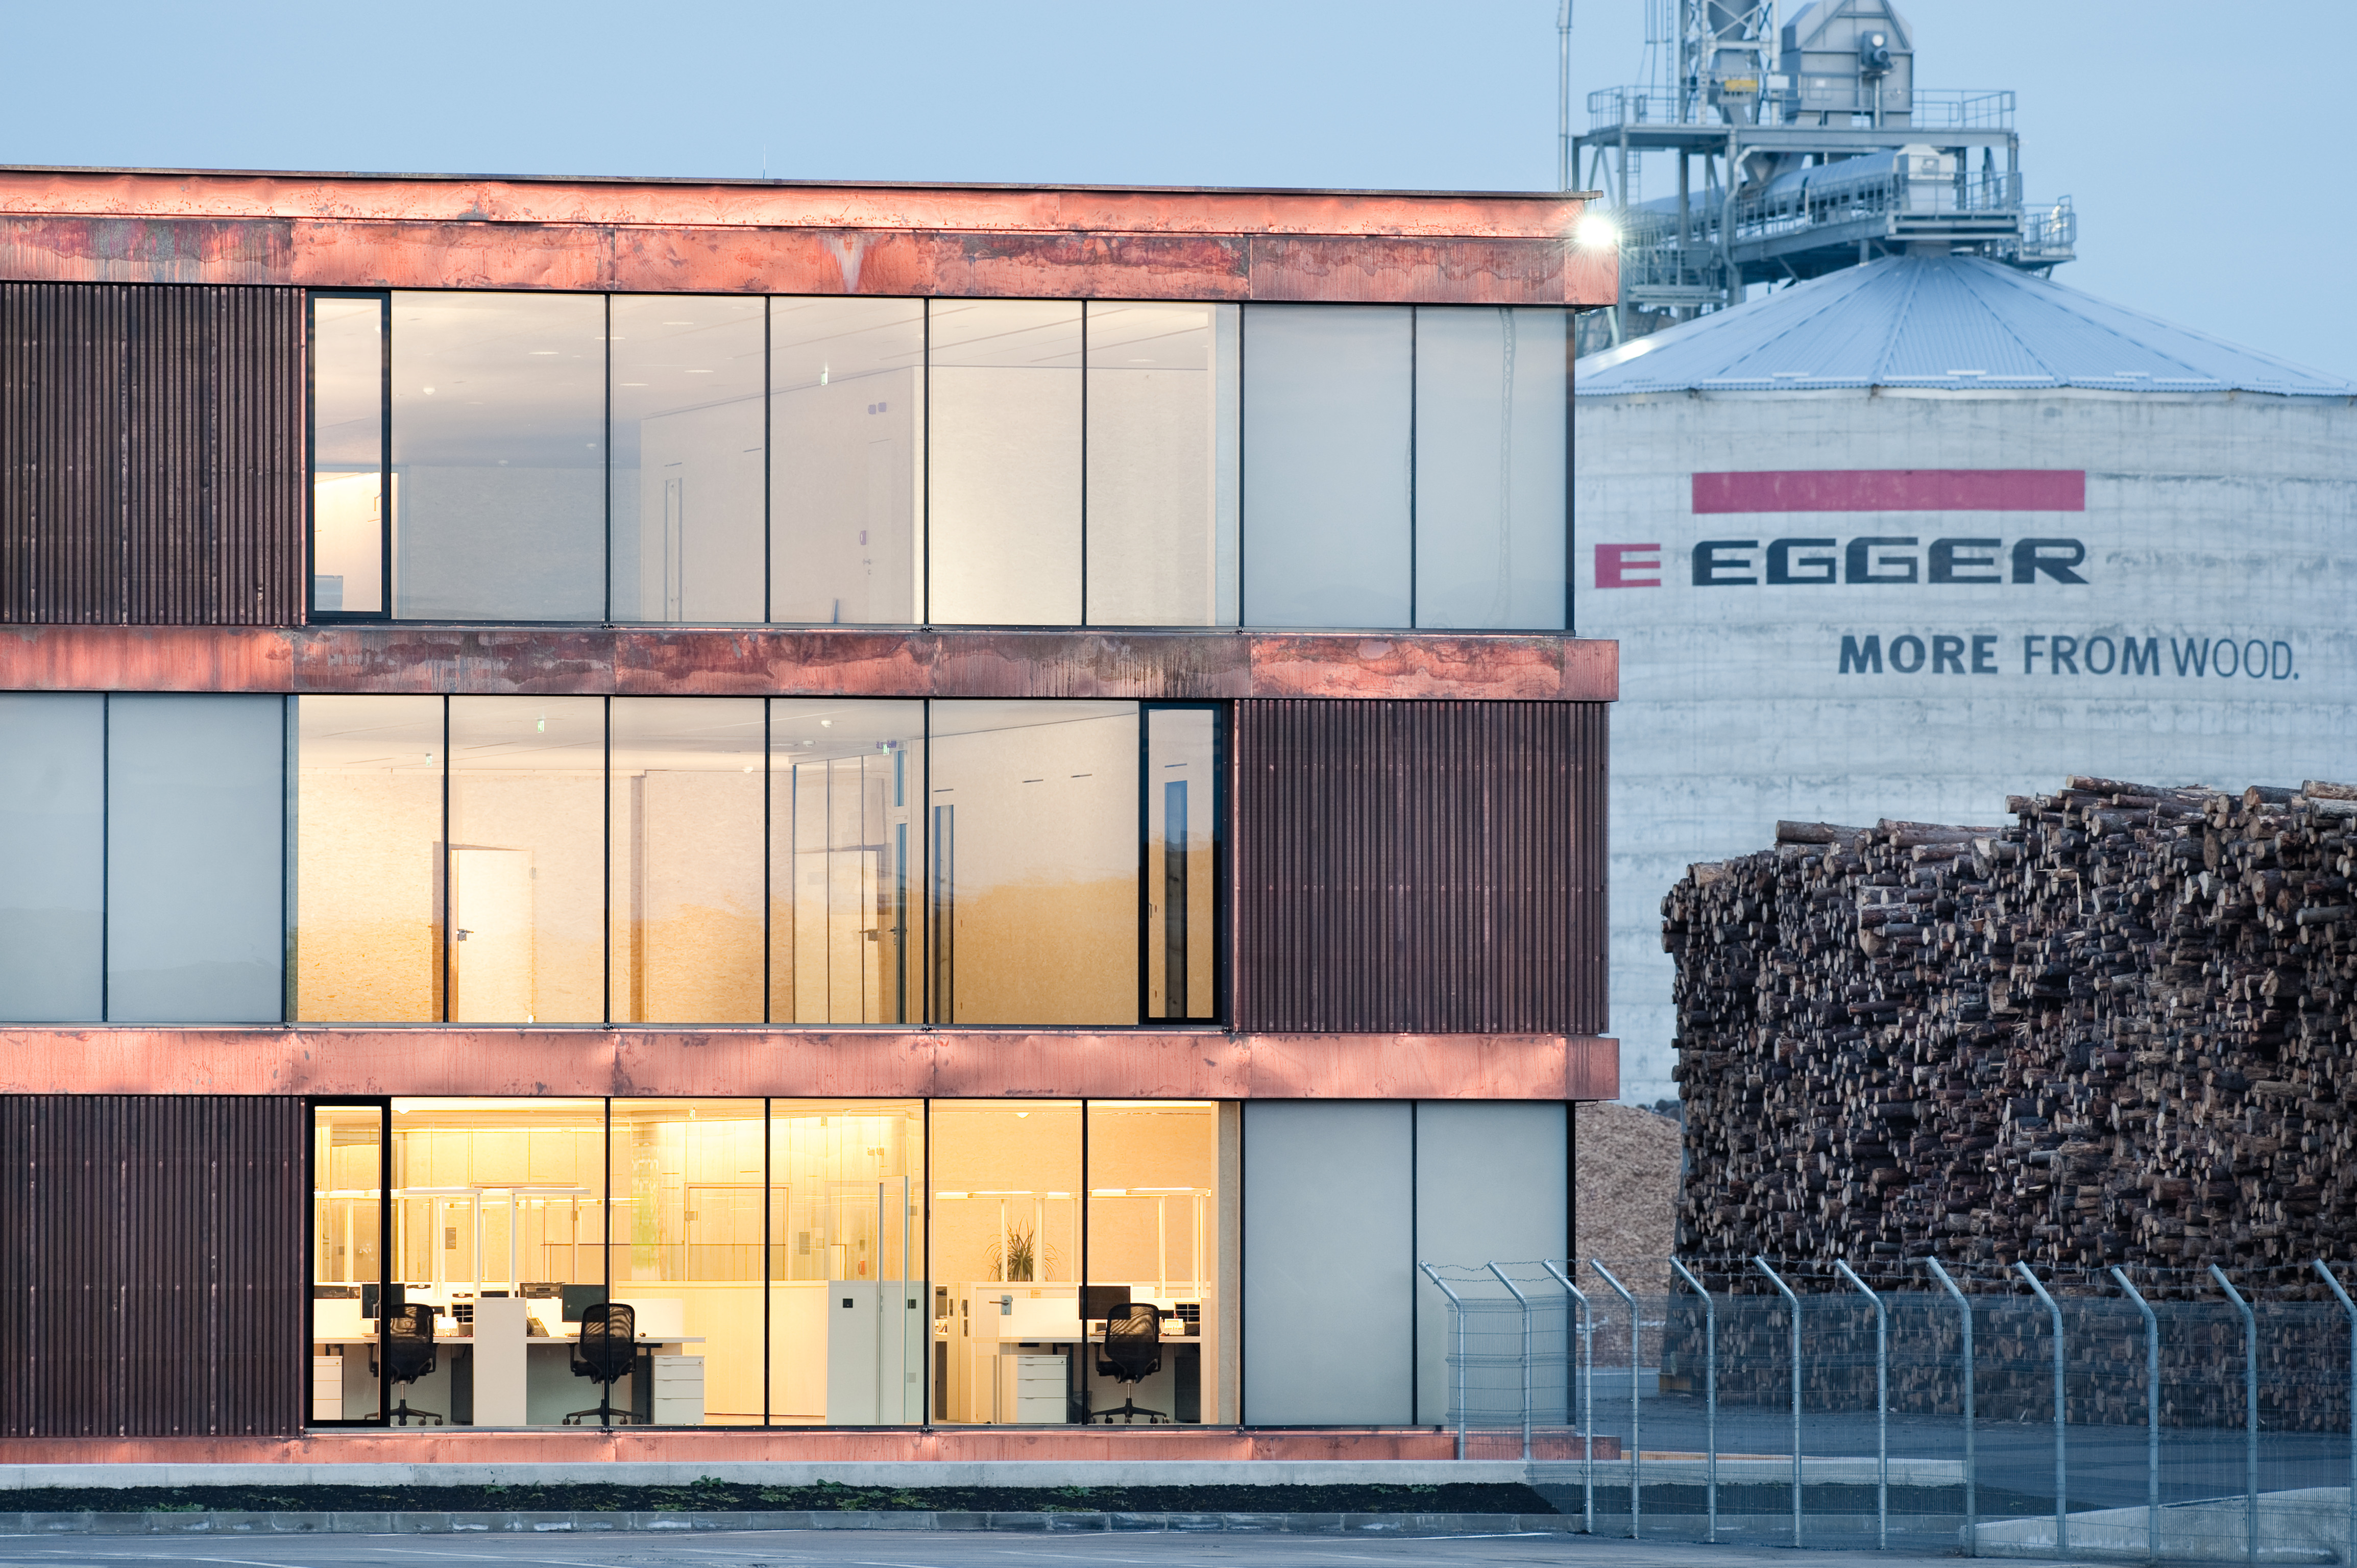 EGGER ondernemingsarchitectuur in modulaire bouwwijze